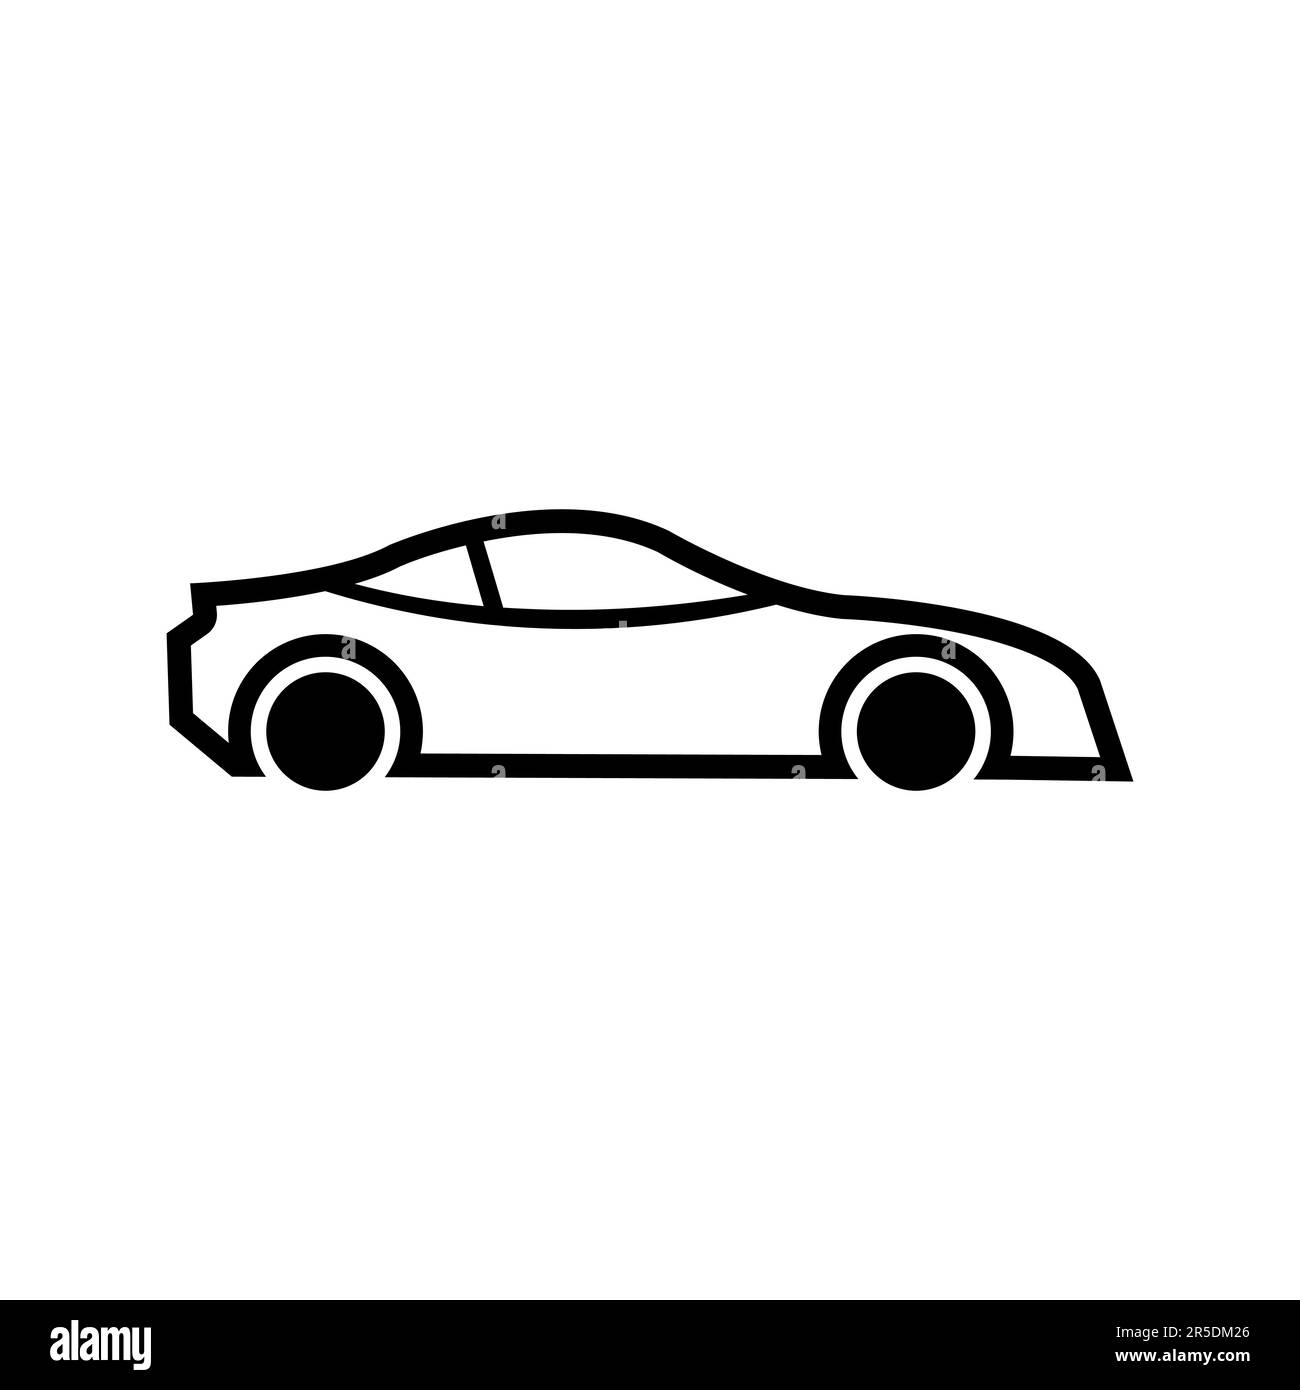 auto car logo template design creative Stock Vector Image & Art